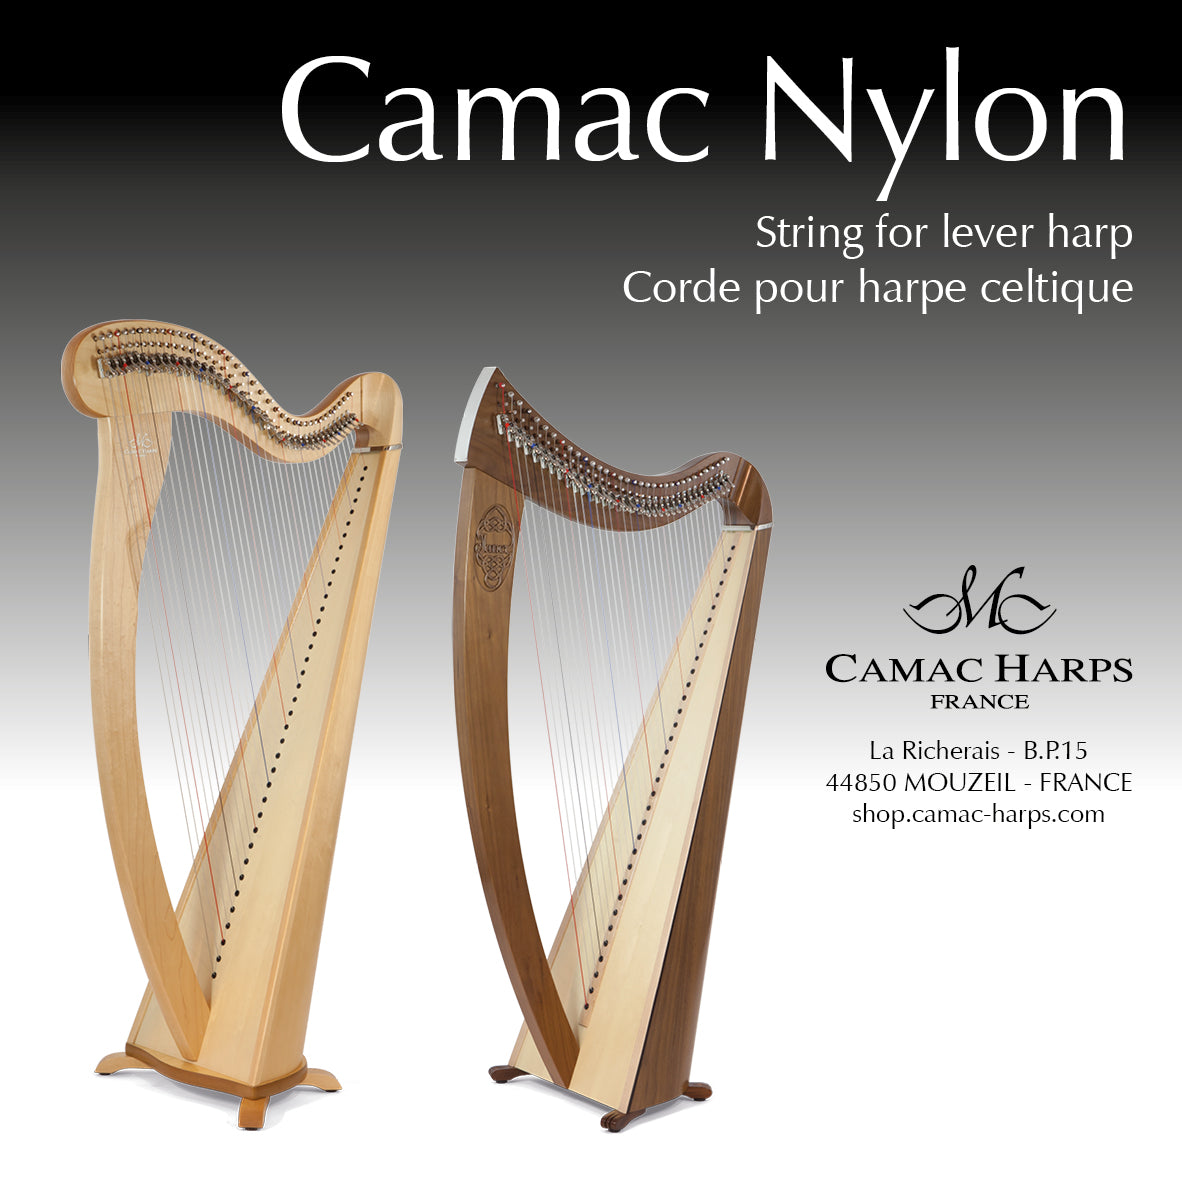 Camac Nylon String for Celtic Harp - 2rd Octave Single String